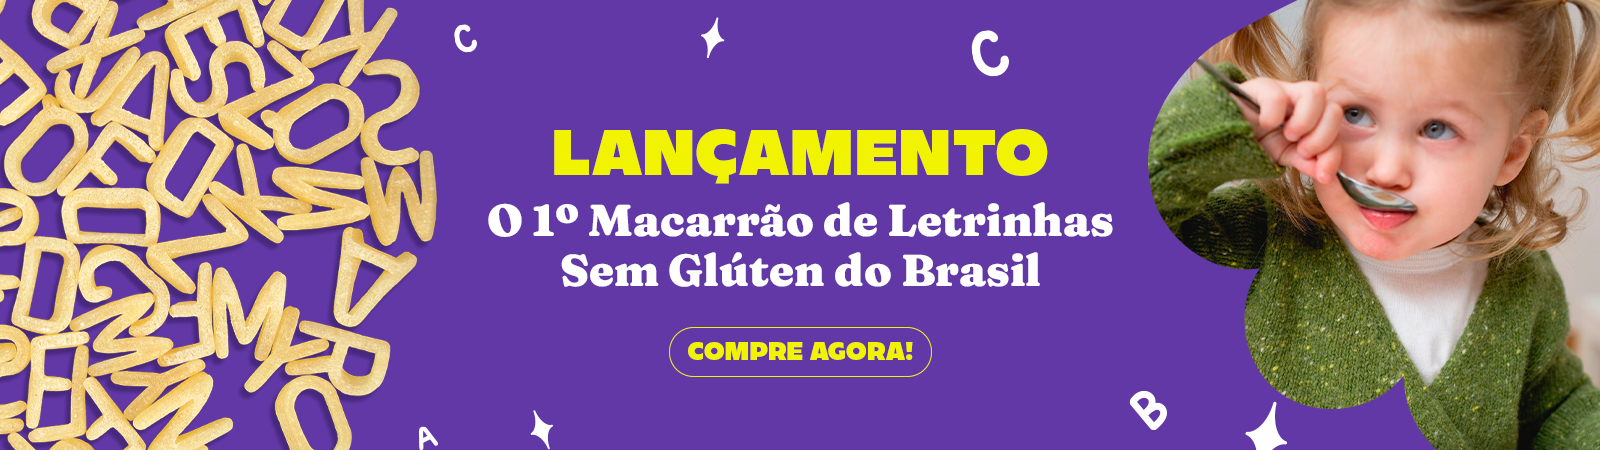 Banner ilustrativo da categoria - Macarrão 03 - Macarrão de Letrinhas